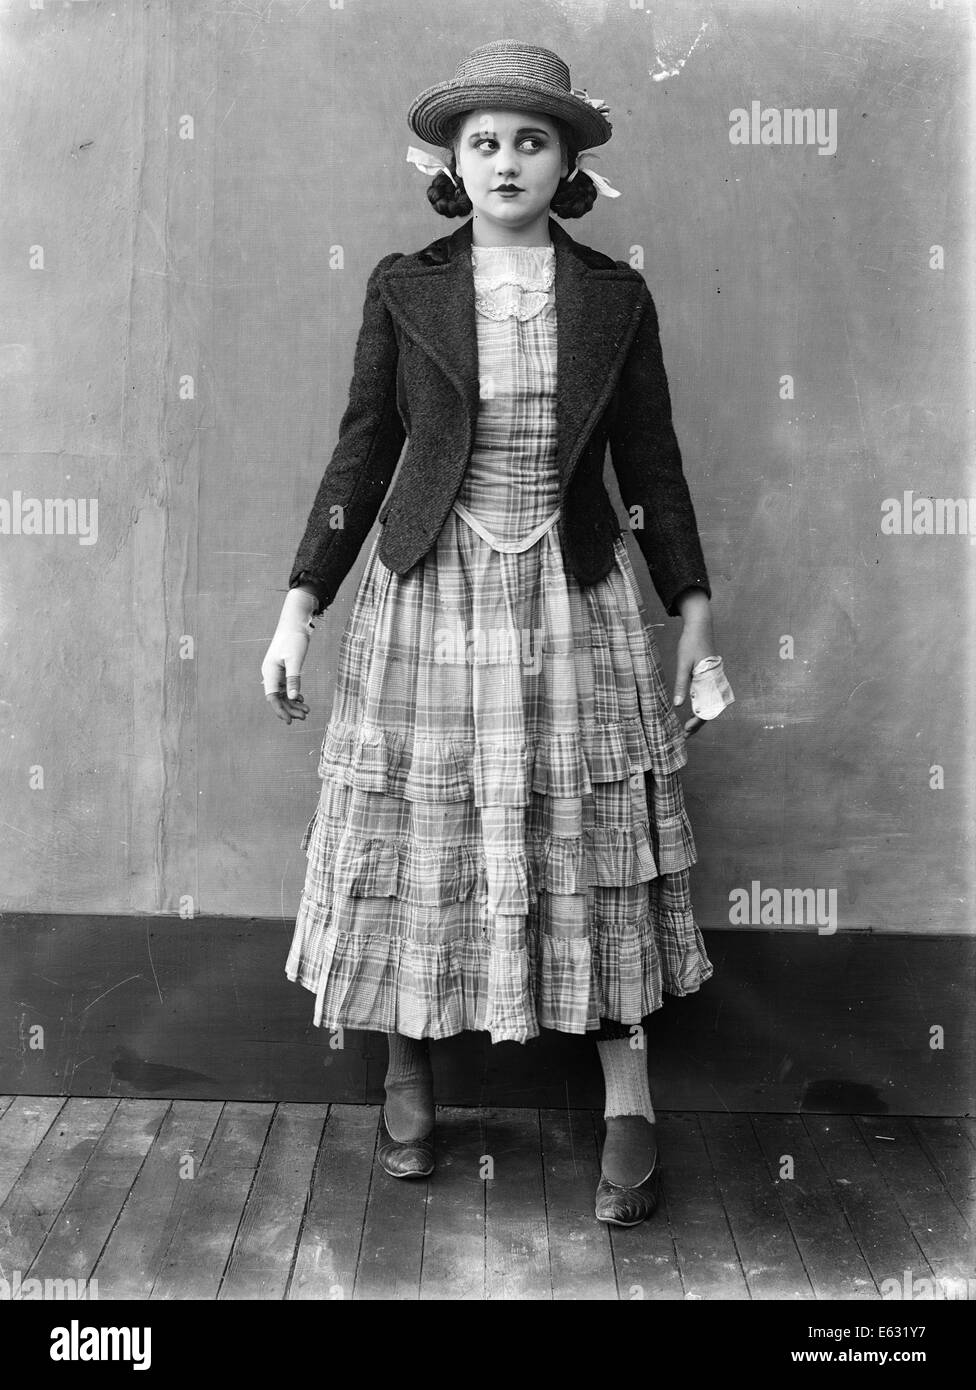 Années 1910 Années 1920, fille de l'adolescence À LA RECHERCHE SUR LE CÔTÉ  PORTANT LA JUPE FROISSÉE veste courte Chapeau de paille toujours film muet  Photo Stock - Alamy